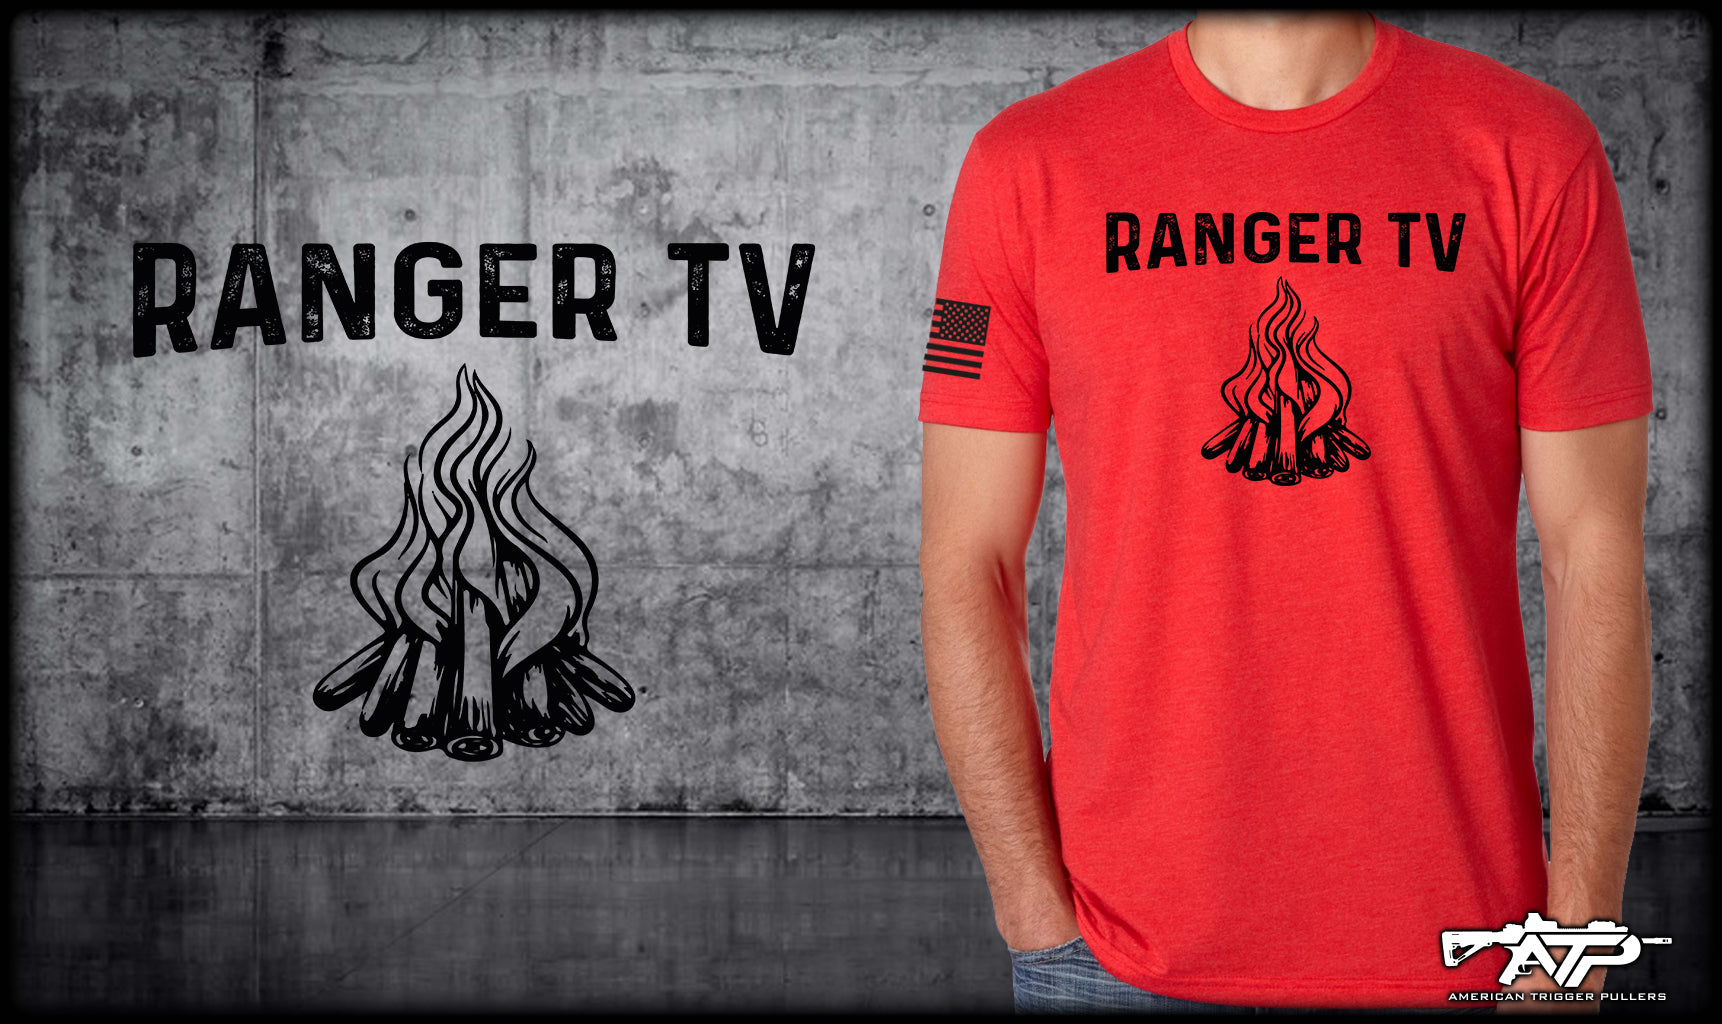 Ranger TV